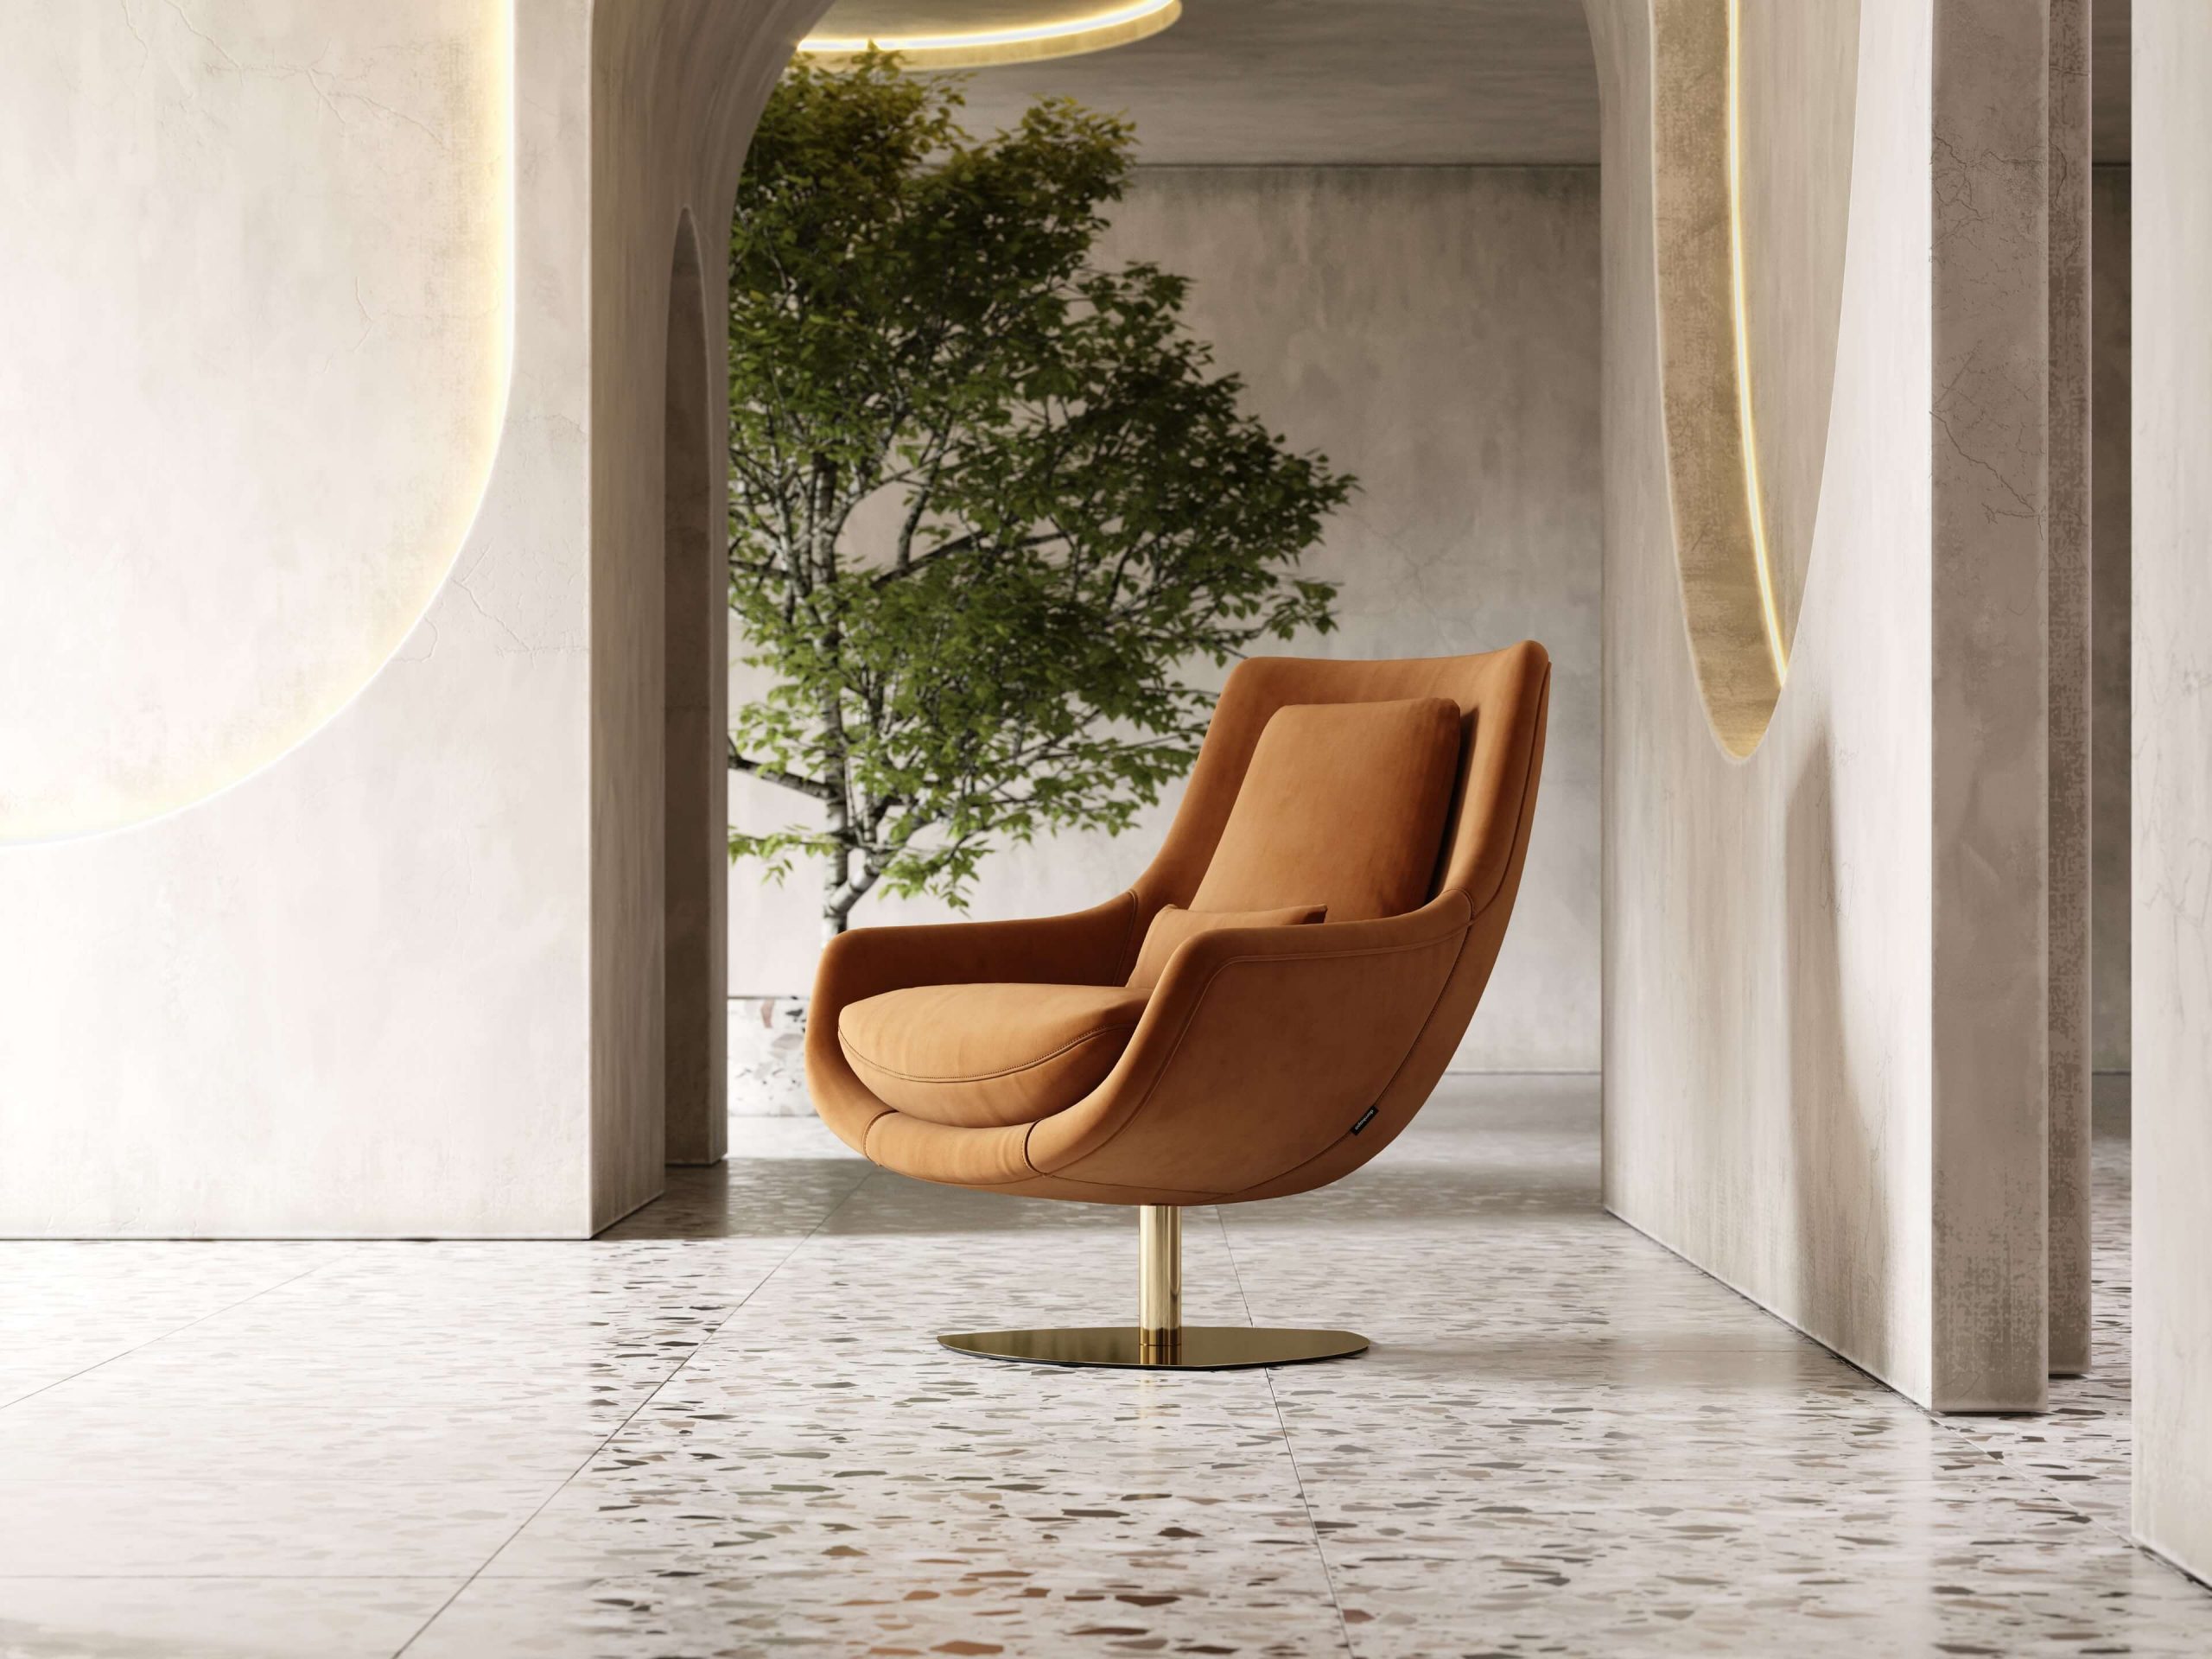 Elba-armchair-cotton-velvet-upholstered-furniture-living-room-interior-design-domkapa-Gold-stainless-steel-8